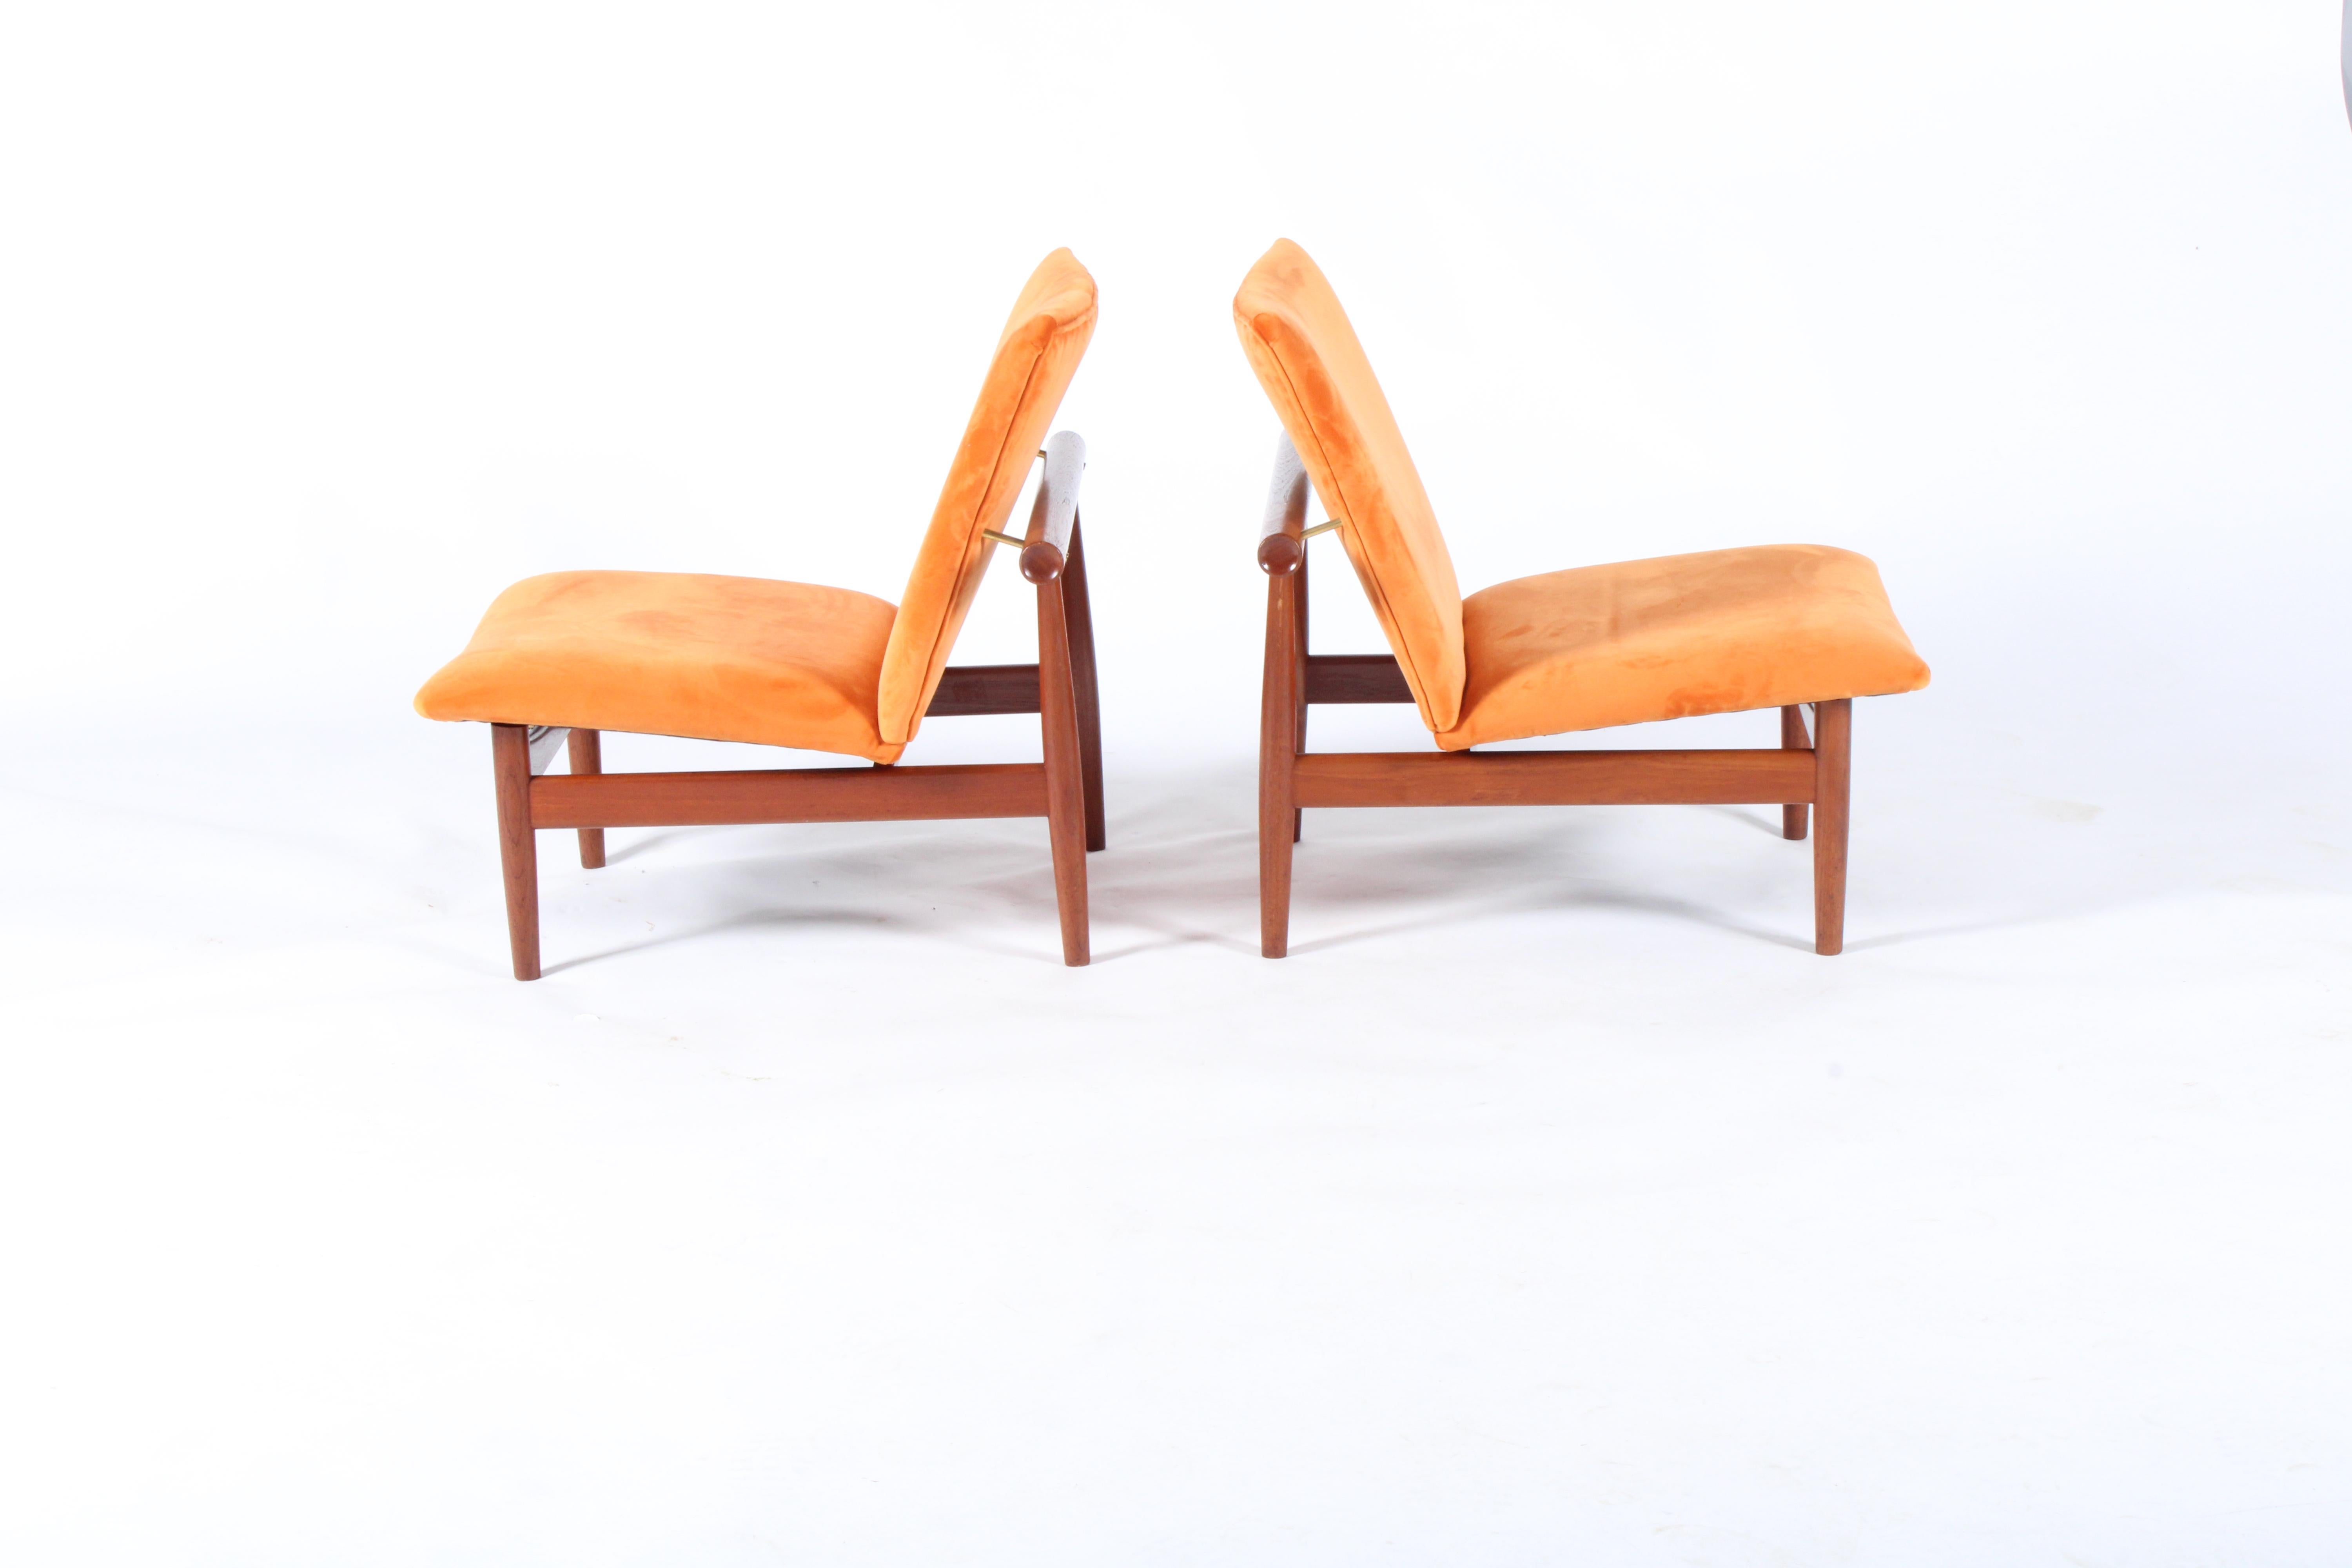 Pair of Iconic Danish Design Japan Chairs by Finn Juhl for France & Daverkosen 1